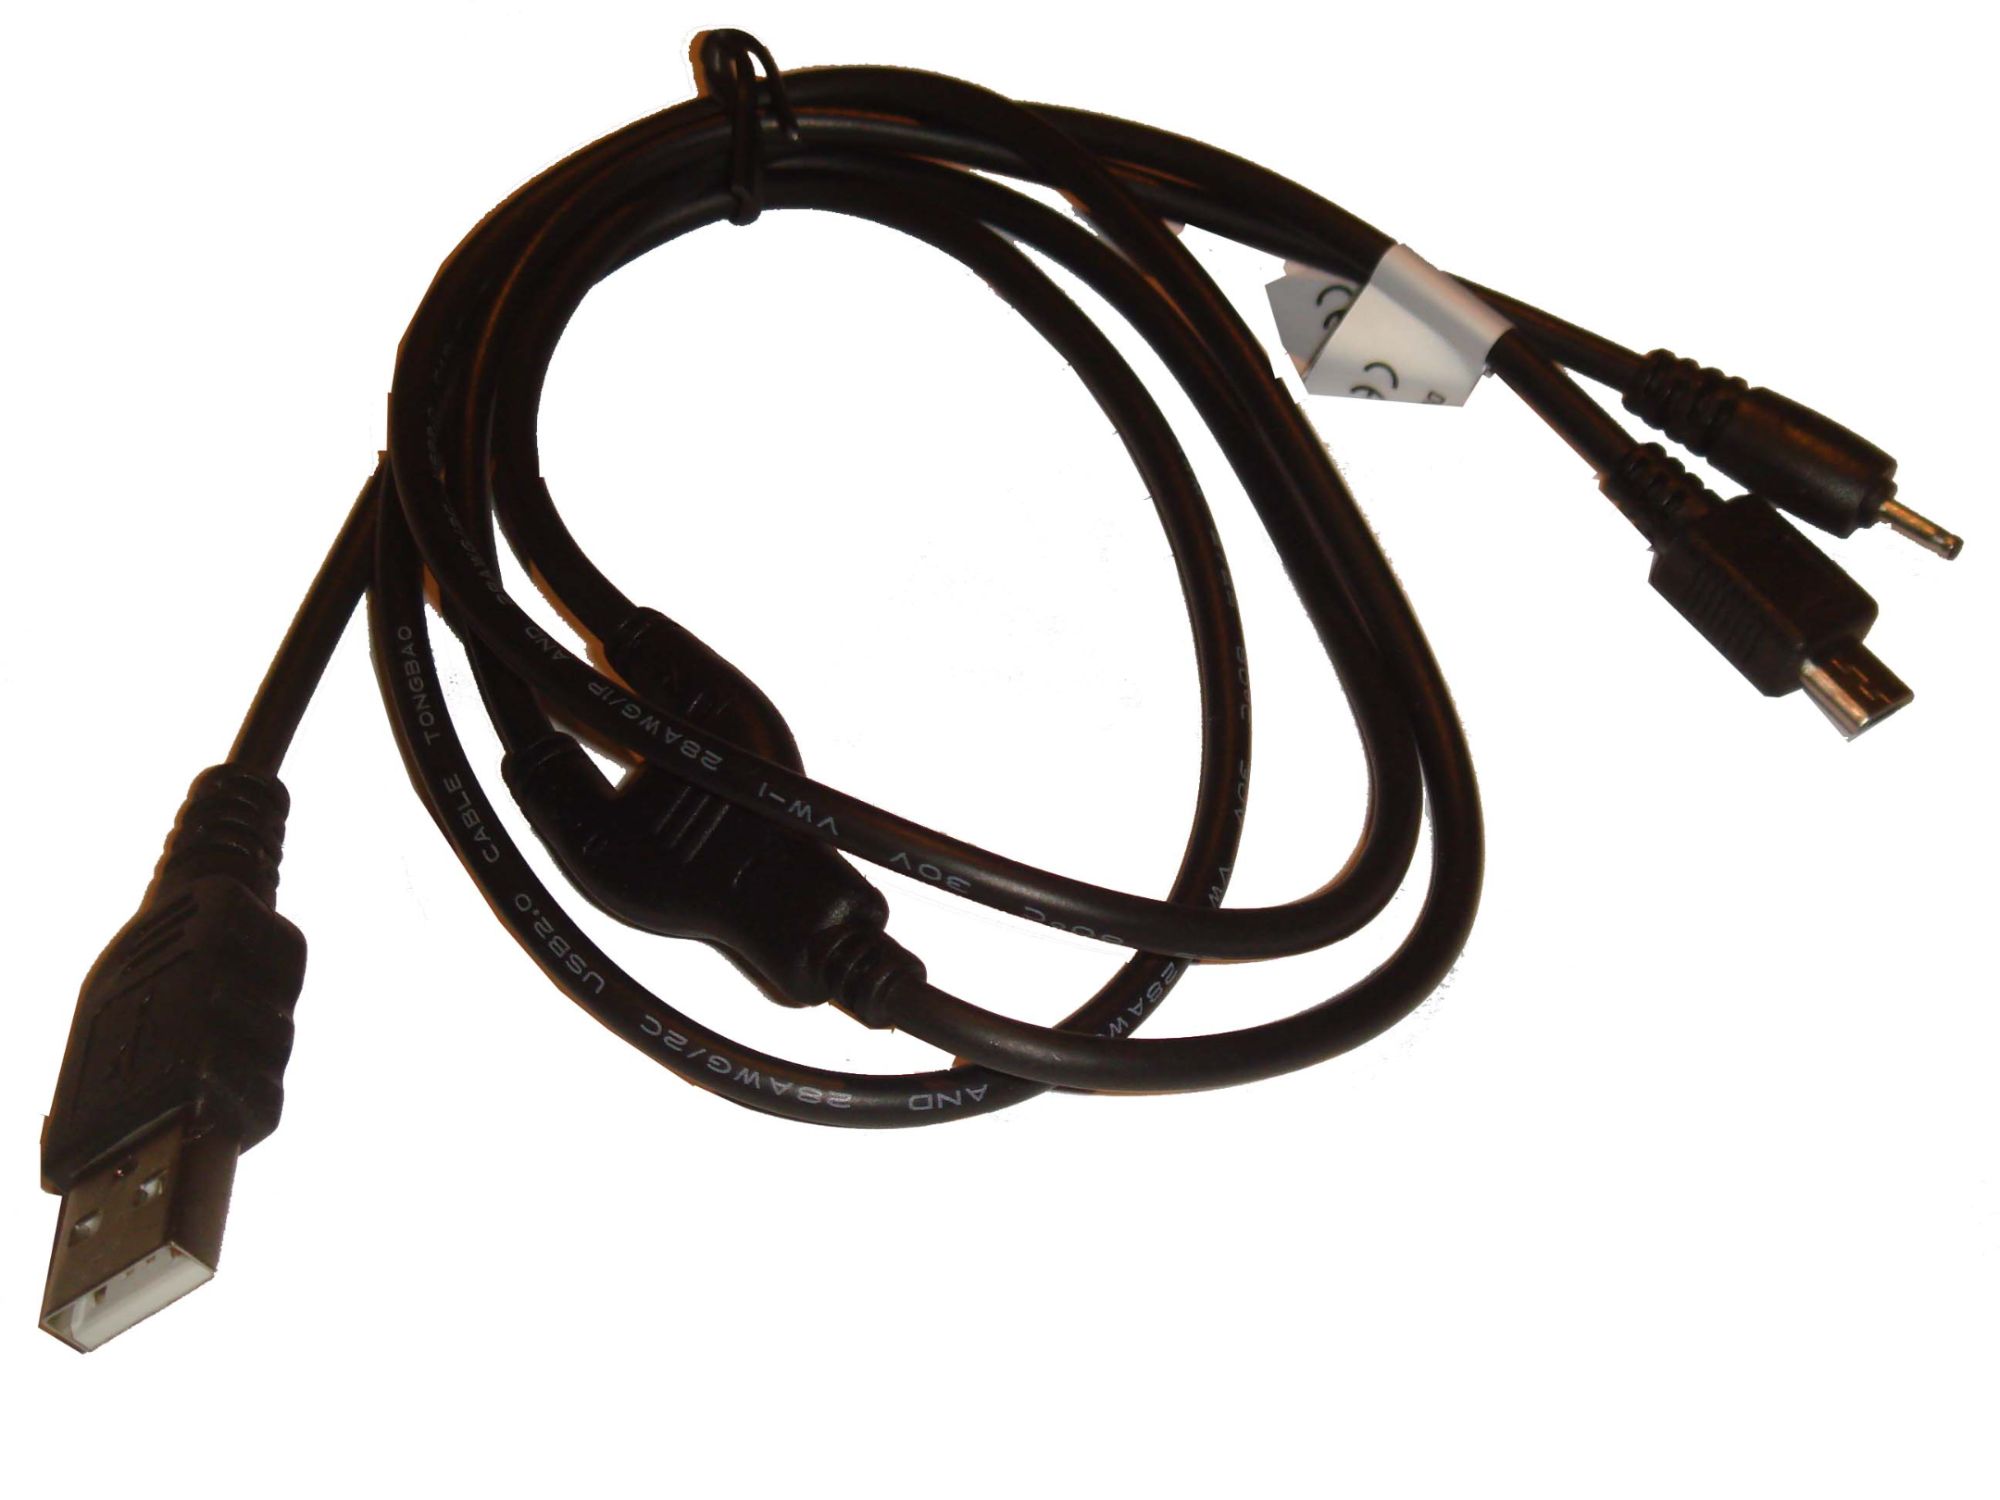 vhbw Câble de données USB compatible avec Nokia 6555, 6303 Classic Illuvial, 6210 Navigator, 6300i, 6220 Classic, 6500 Slide téléphone - noir